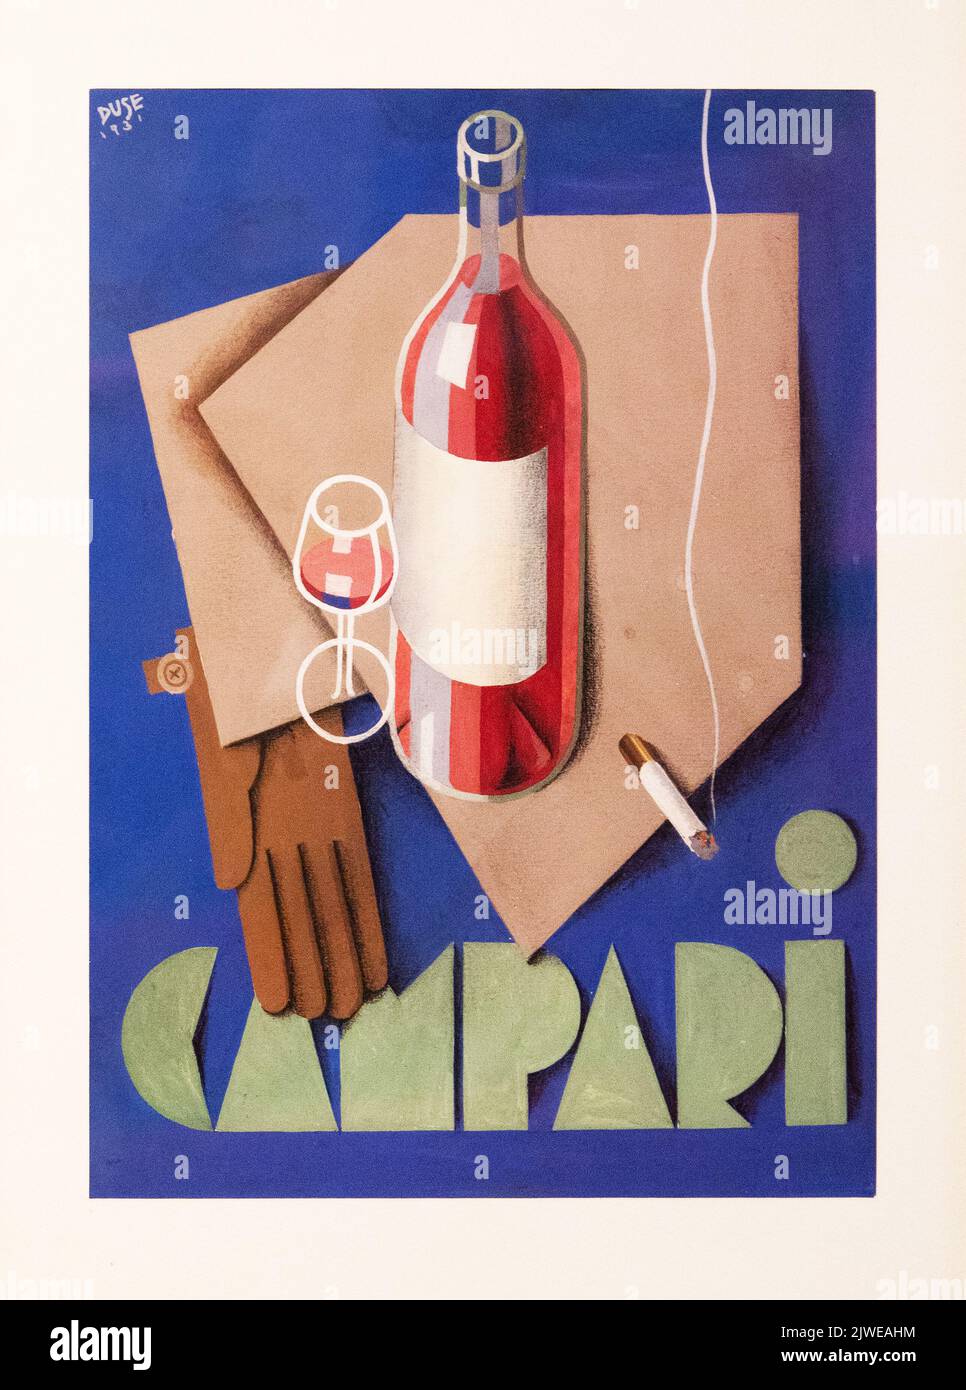 Vecchia illustrazione pubblicità Campari drink. Immagine scattata alla Galleria Campari vicino a Milano. Foto Stock